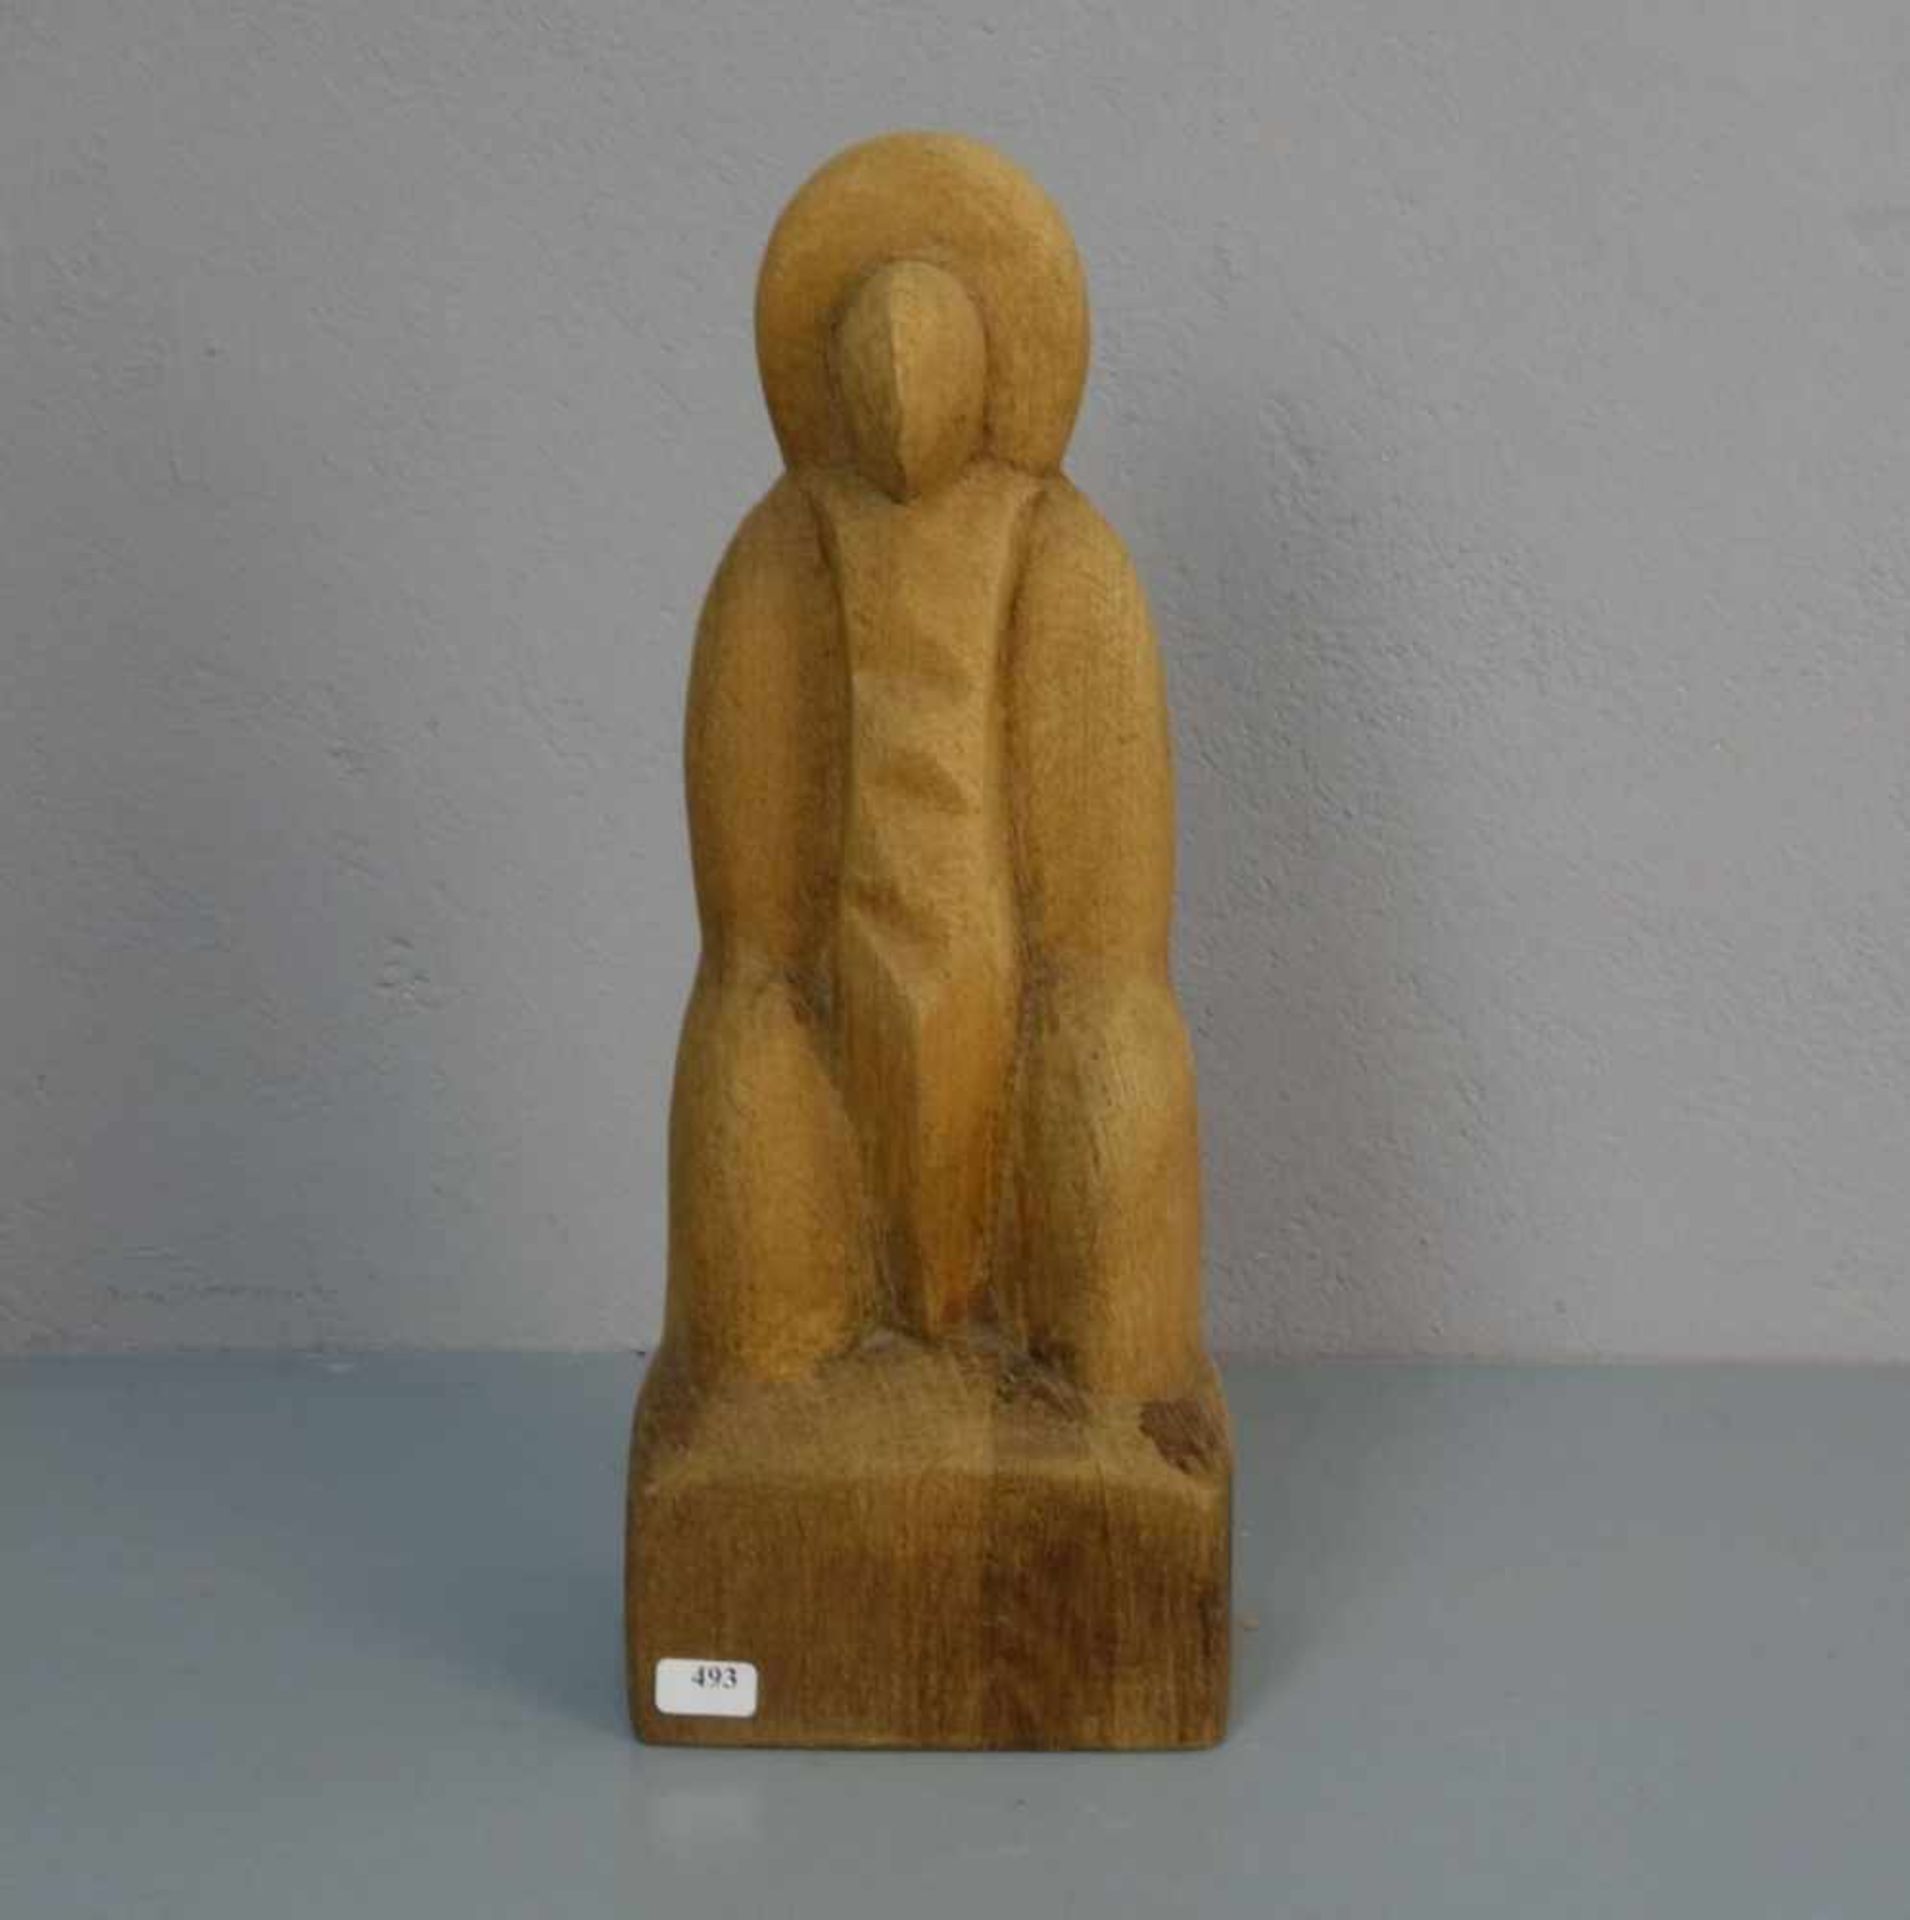 AUF DER HEIDE, HERMAN (Alfhausen 1941-2003 ebd.), Skulptur / sculpture: "Sitzender / Thronender",